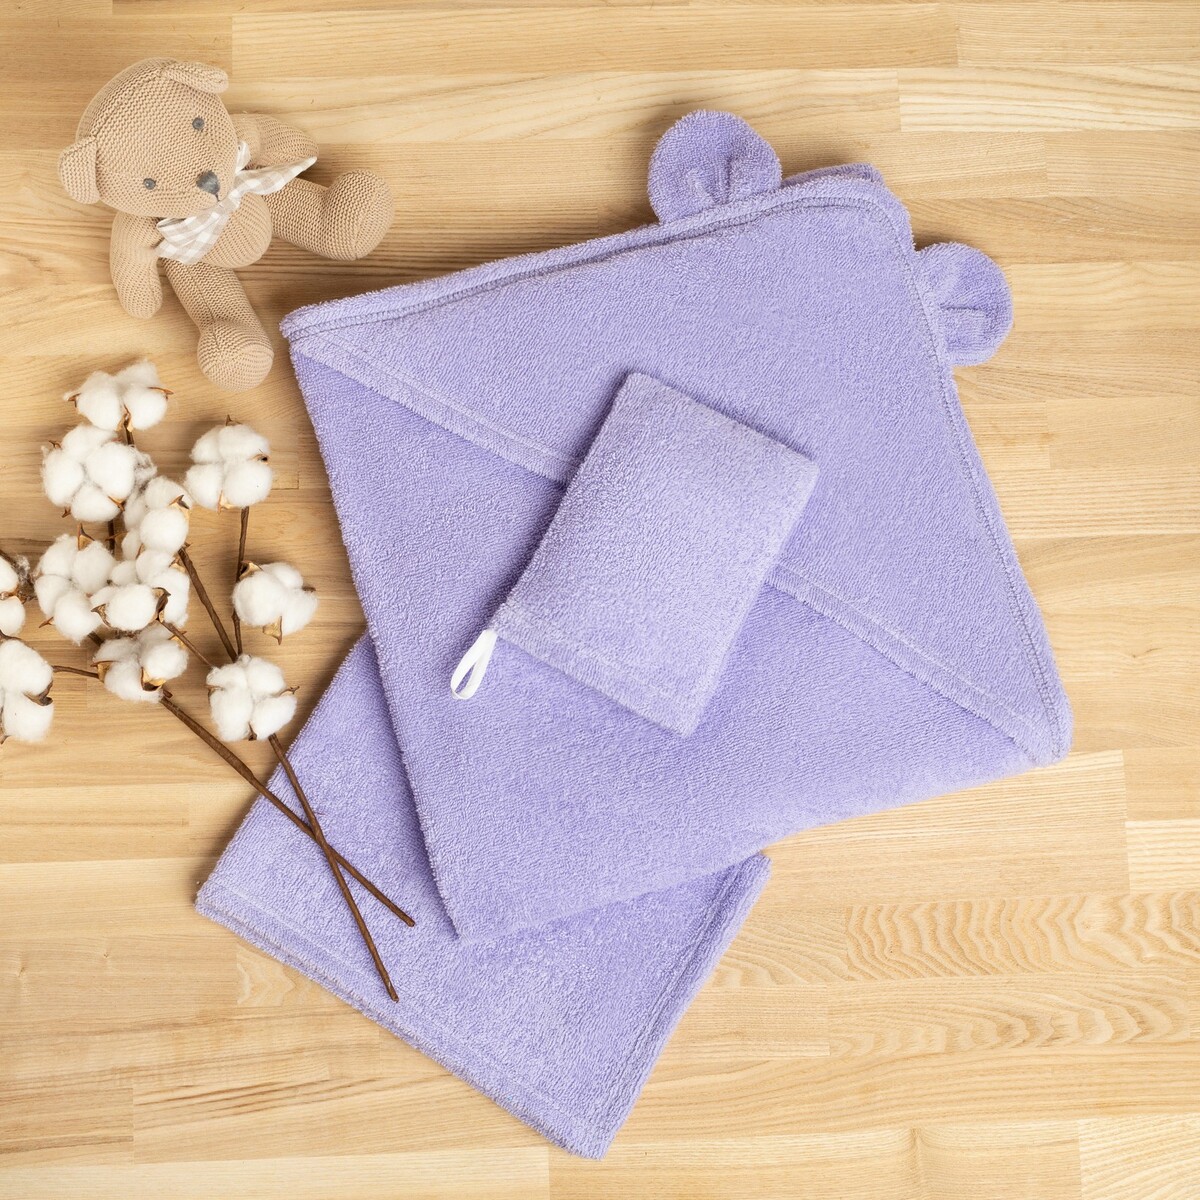 Набор для полотенце уголок рукавица набор для бани 3 предмета шапка рукавица коврик никитинская мануфактура все индейцы как индейцы на015